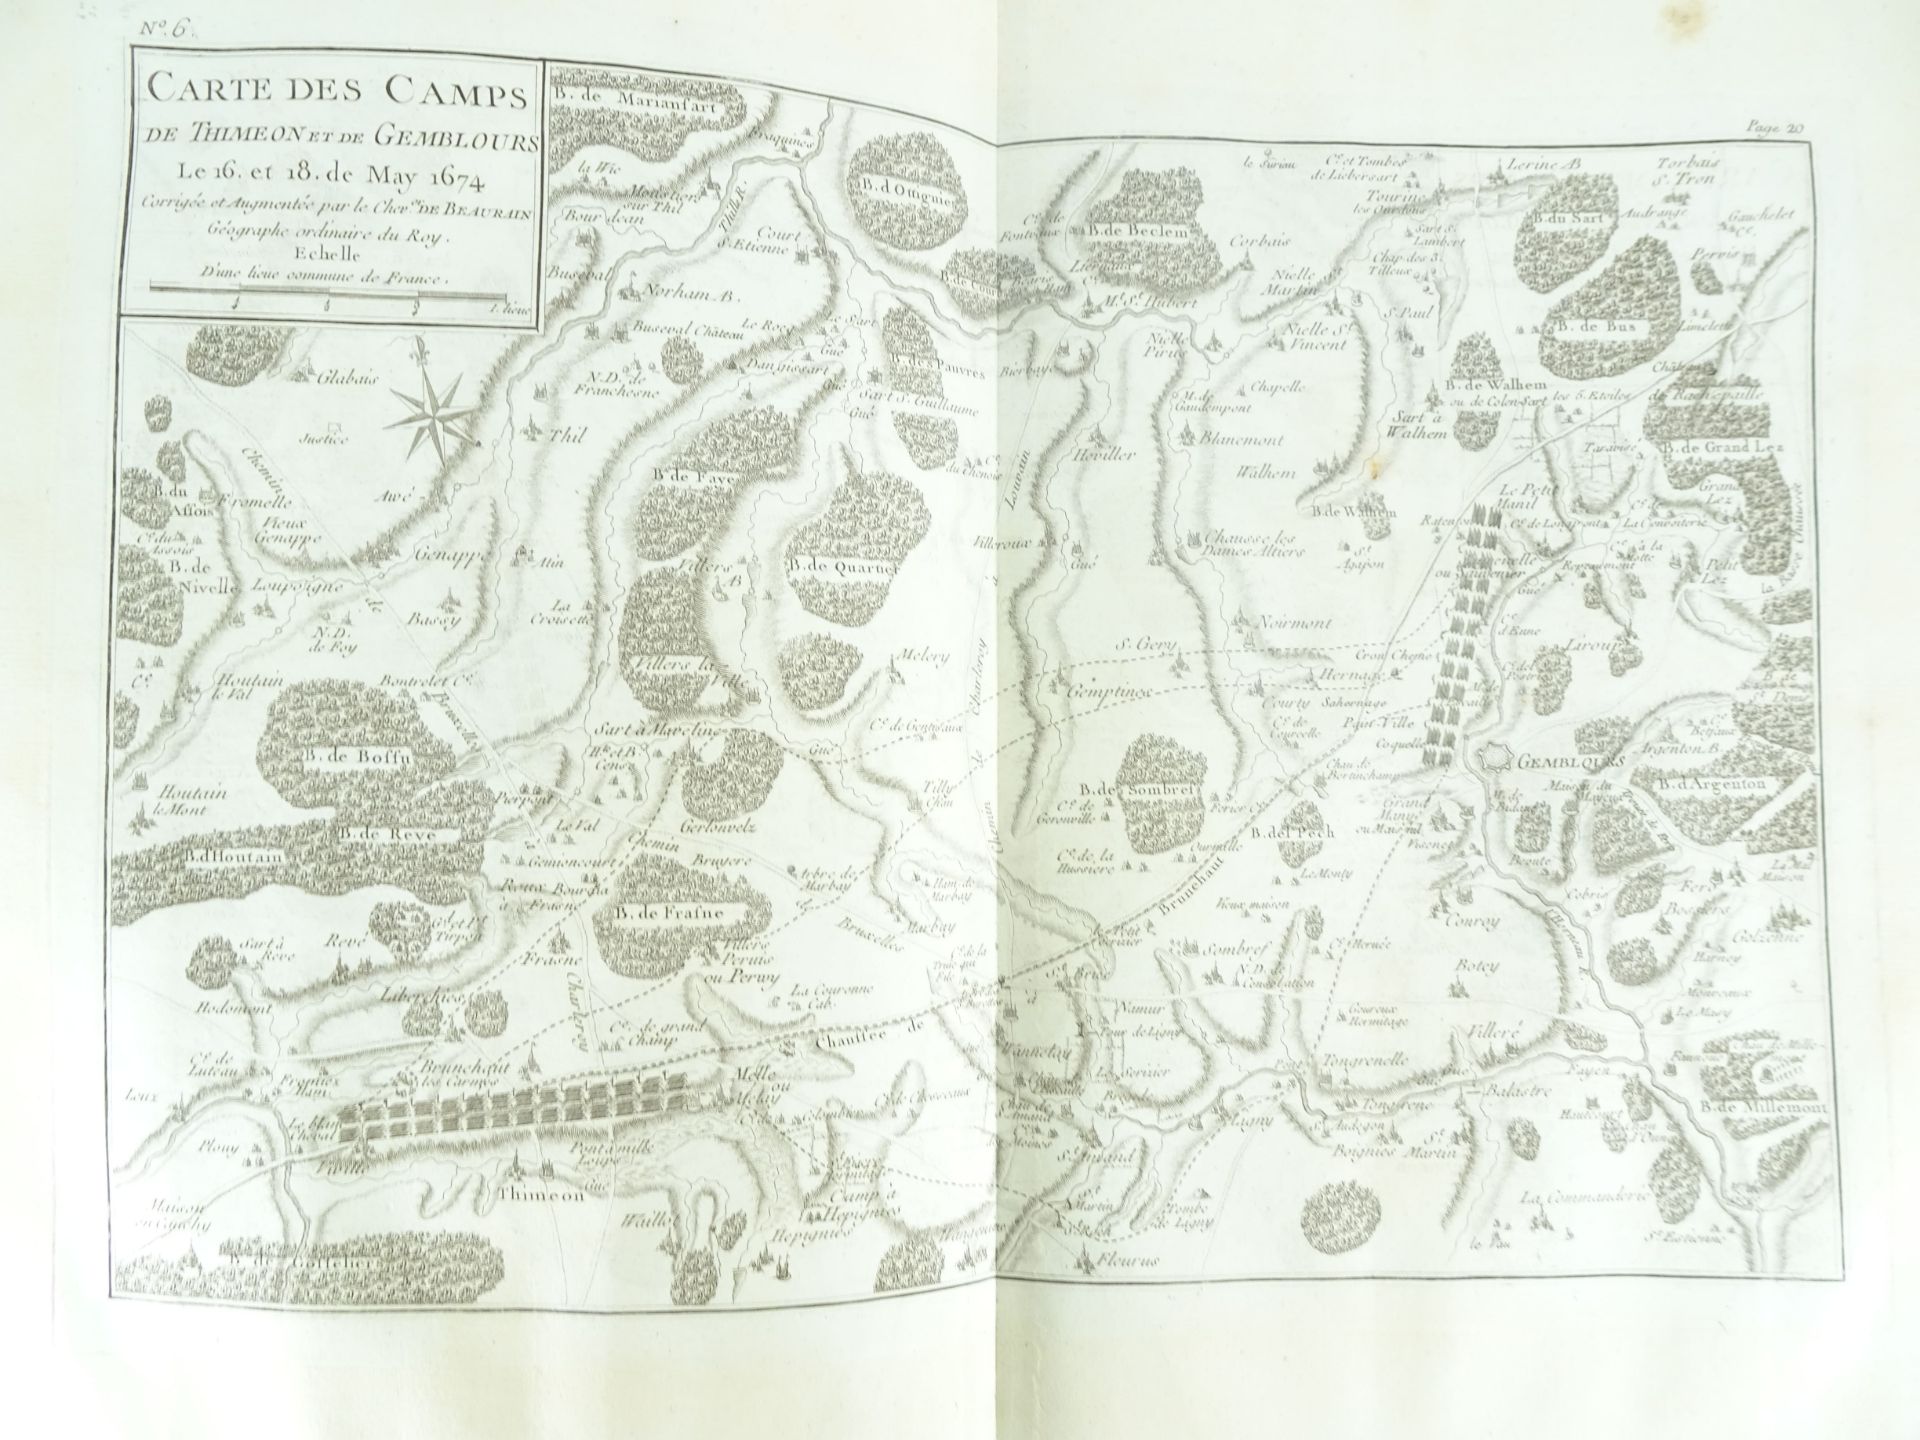 |Histoire Militaire| Chevalier de Beaurain, Histoire de la Campagne de 1674 en Flandre précédé d' - Image 14 of 19